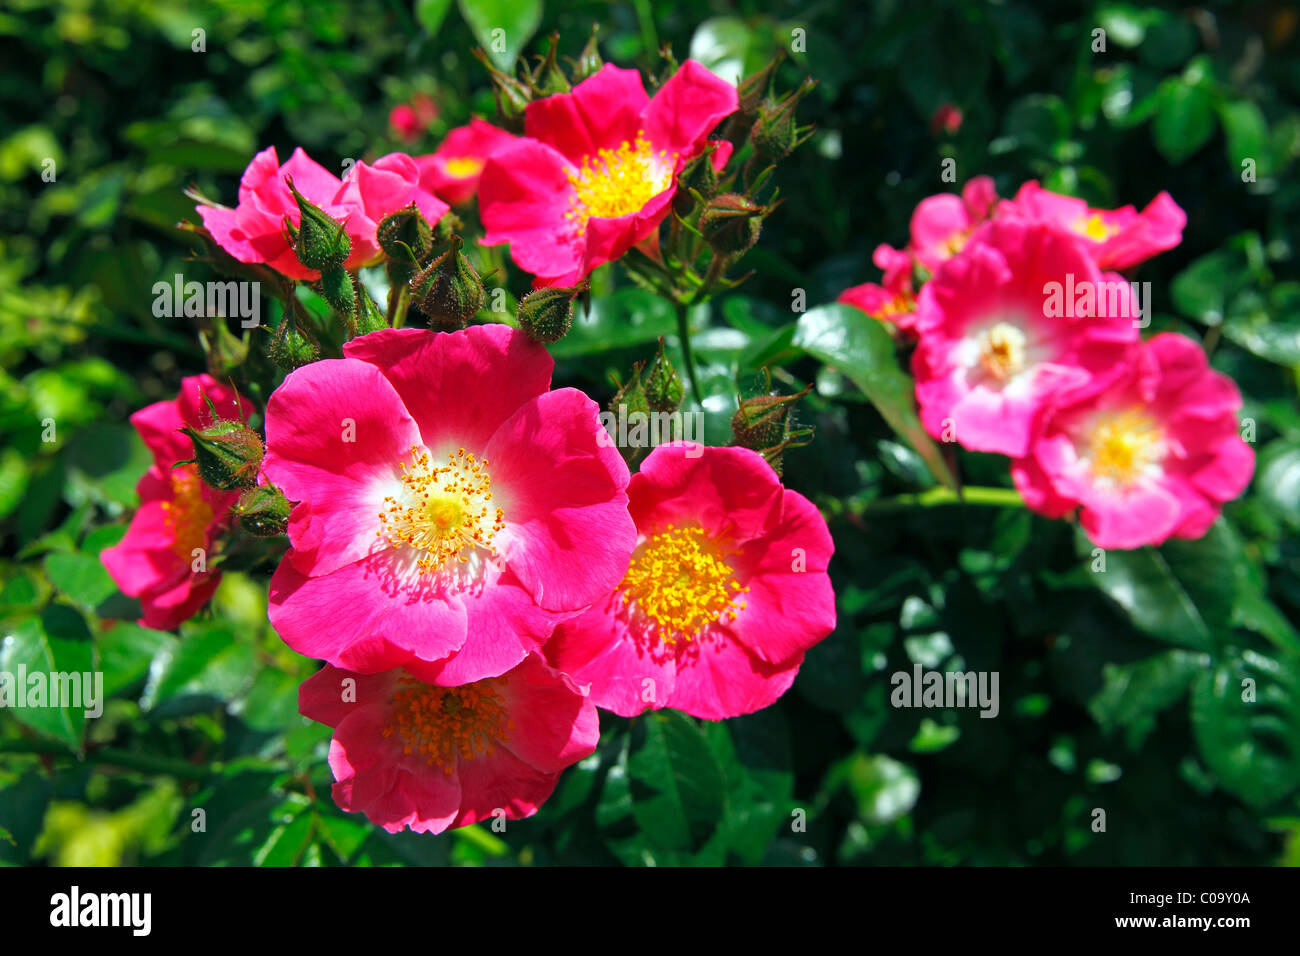 Rose, American Pillar variety (Rosa cultivar American Pillar), rambling rose, climbing rose Stock Photo